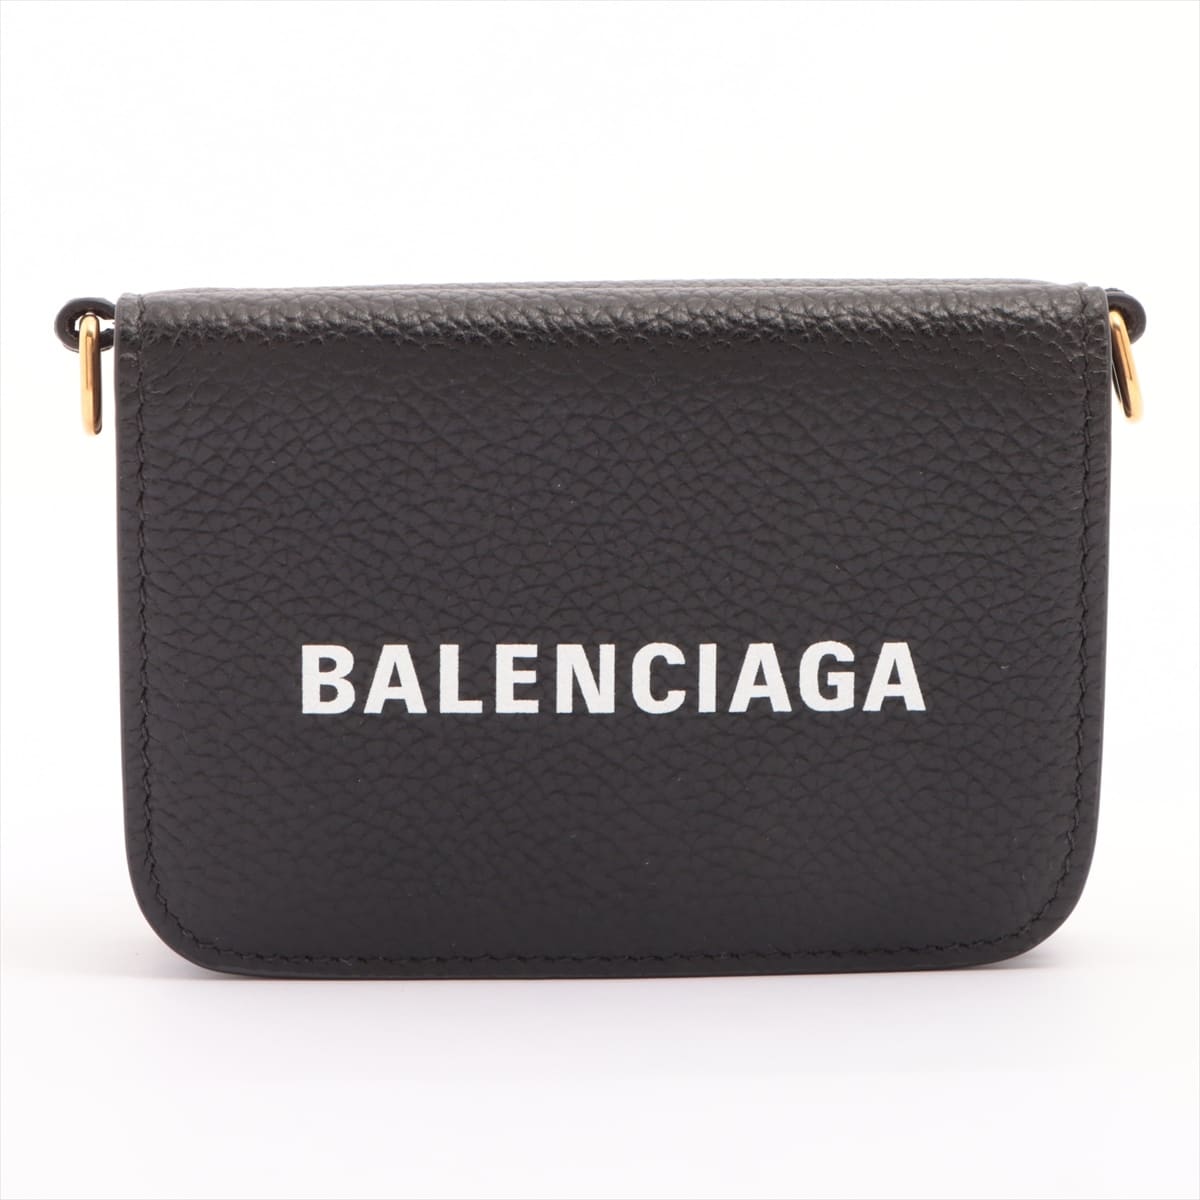 Balenciaga Logo 618145 Leather Chain wallet Black × White